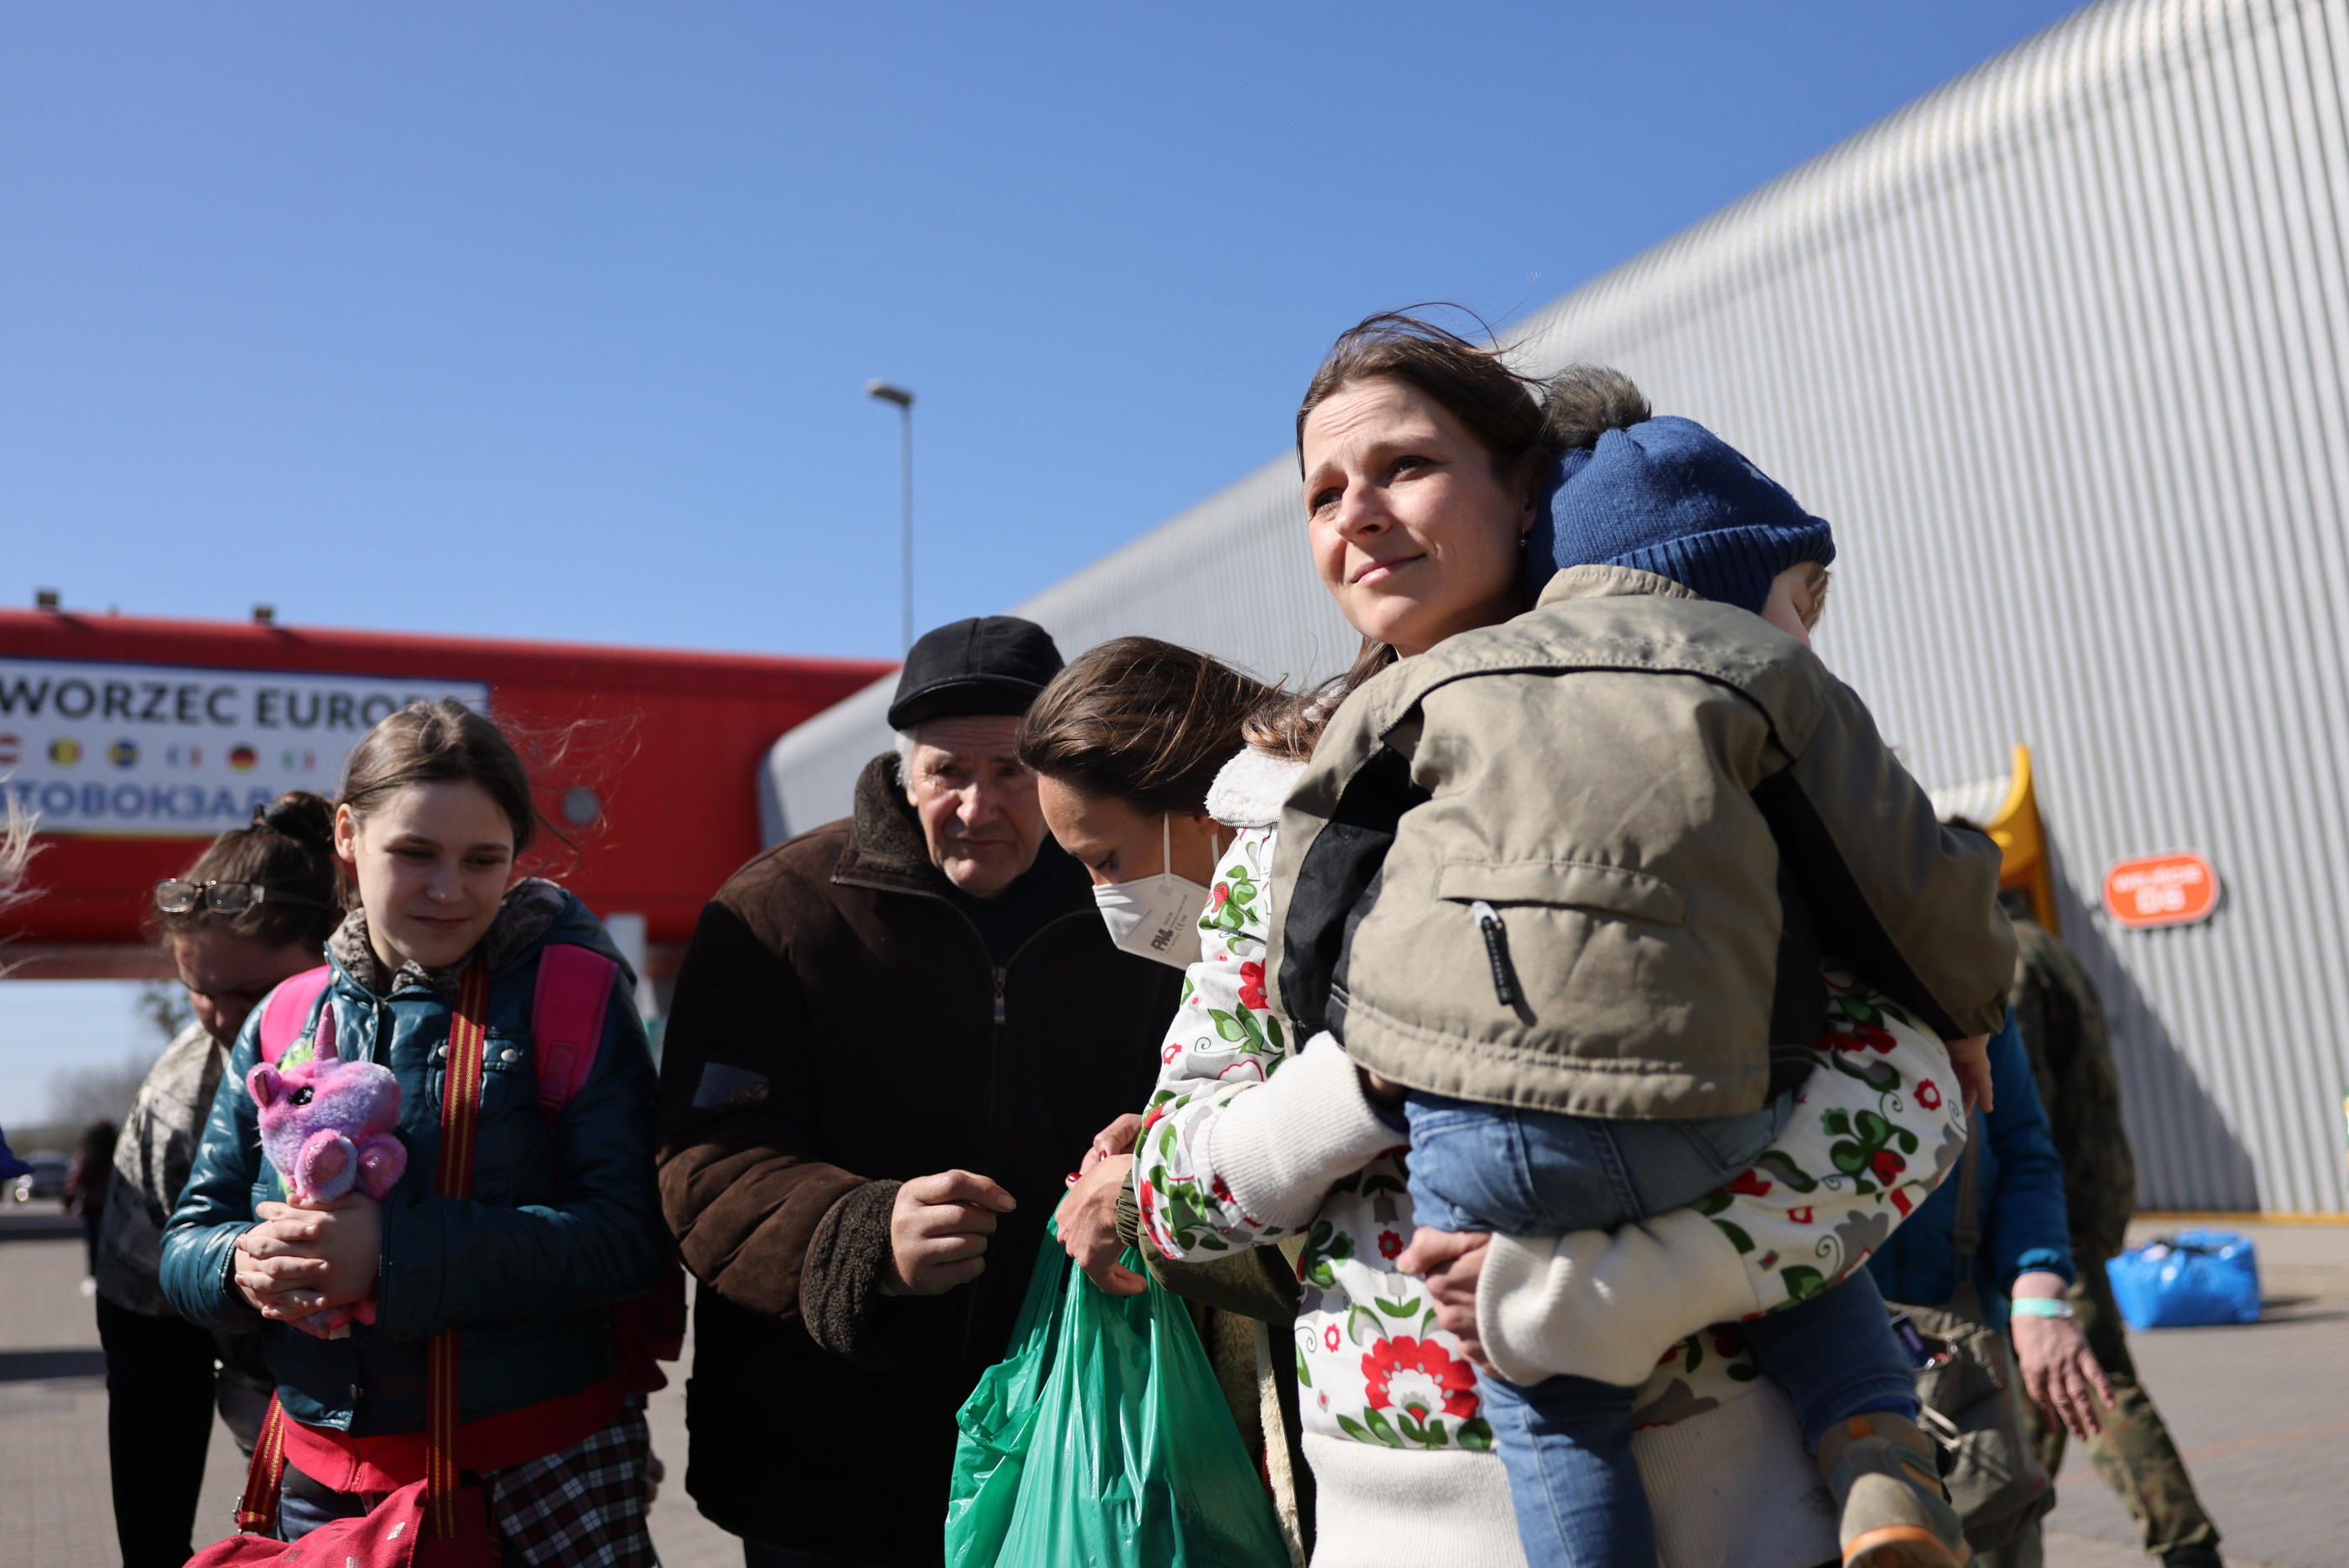 Alisa vit désormais dans le Vaucluse, avec ses trois enfants. Nous les avions d'abord rencontrés le 28 mars à Varsovie, juste avant leur départ dans un convoi humanitaire affrété par des bénévoles du département. LP/Arnaud Journois